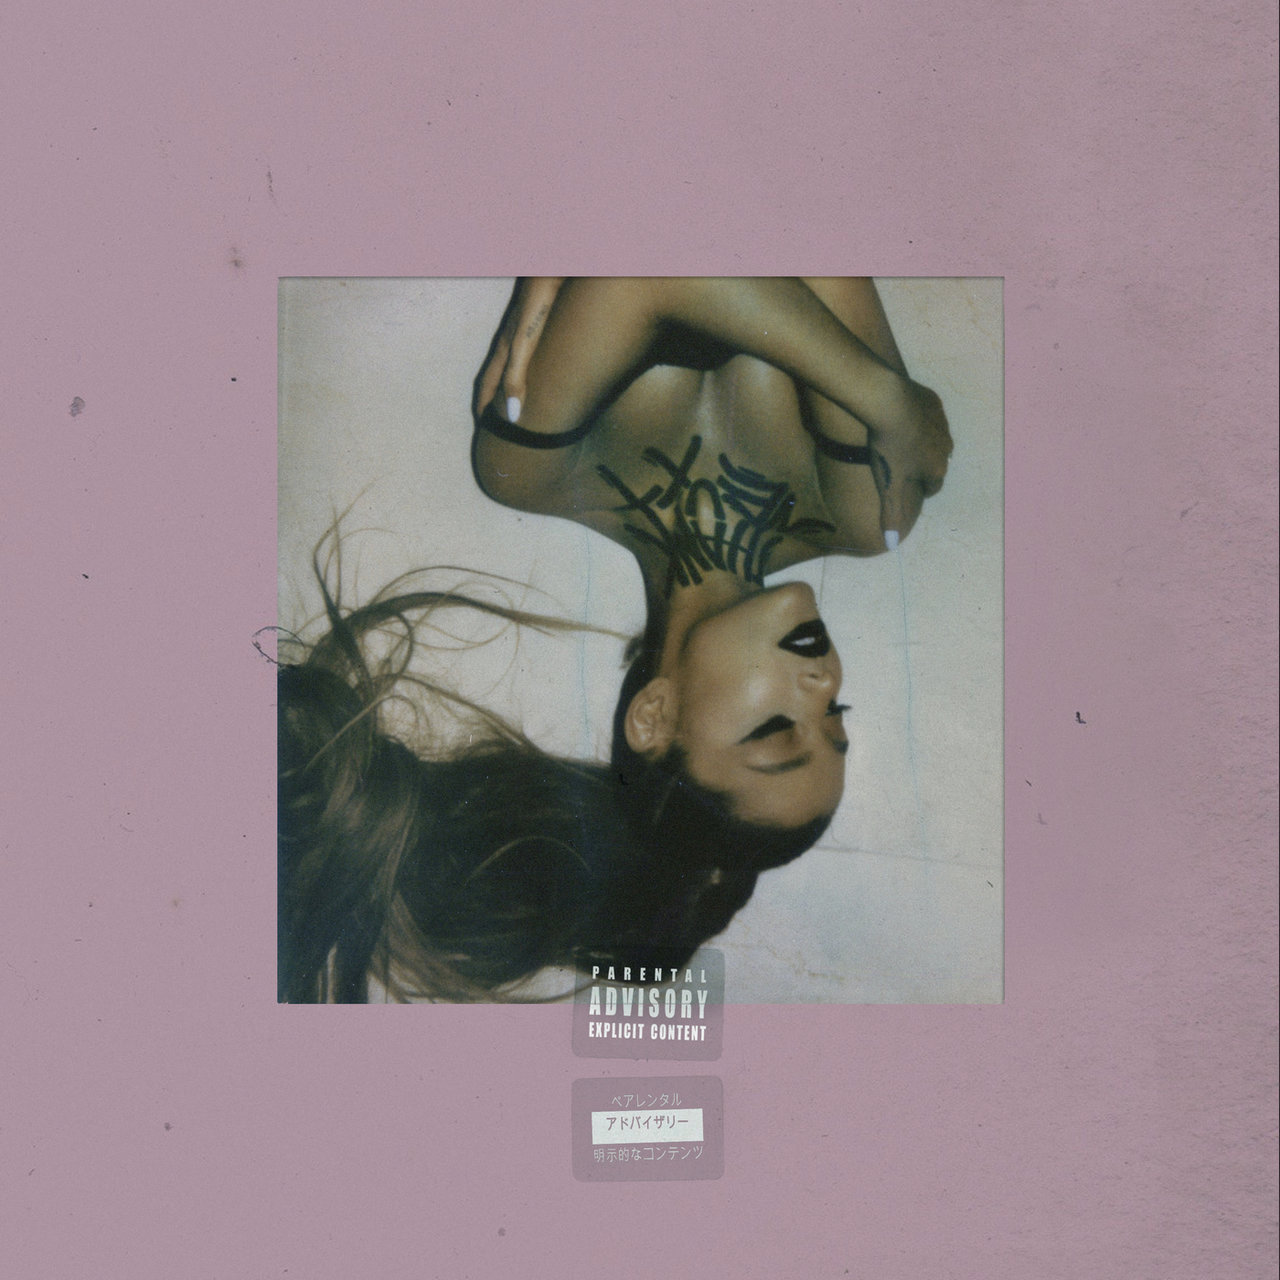 Ariana Grande - Thank U, Next (Cover)